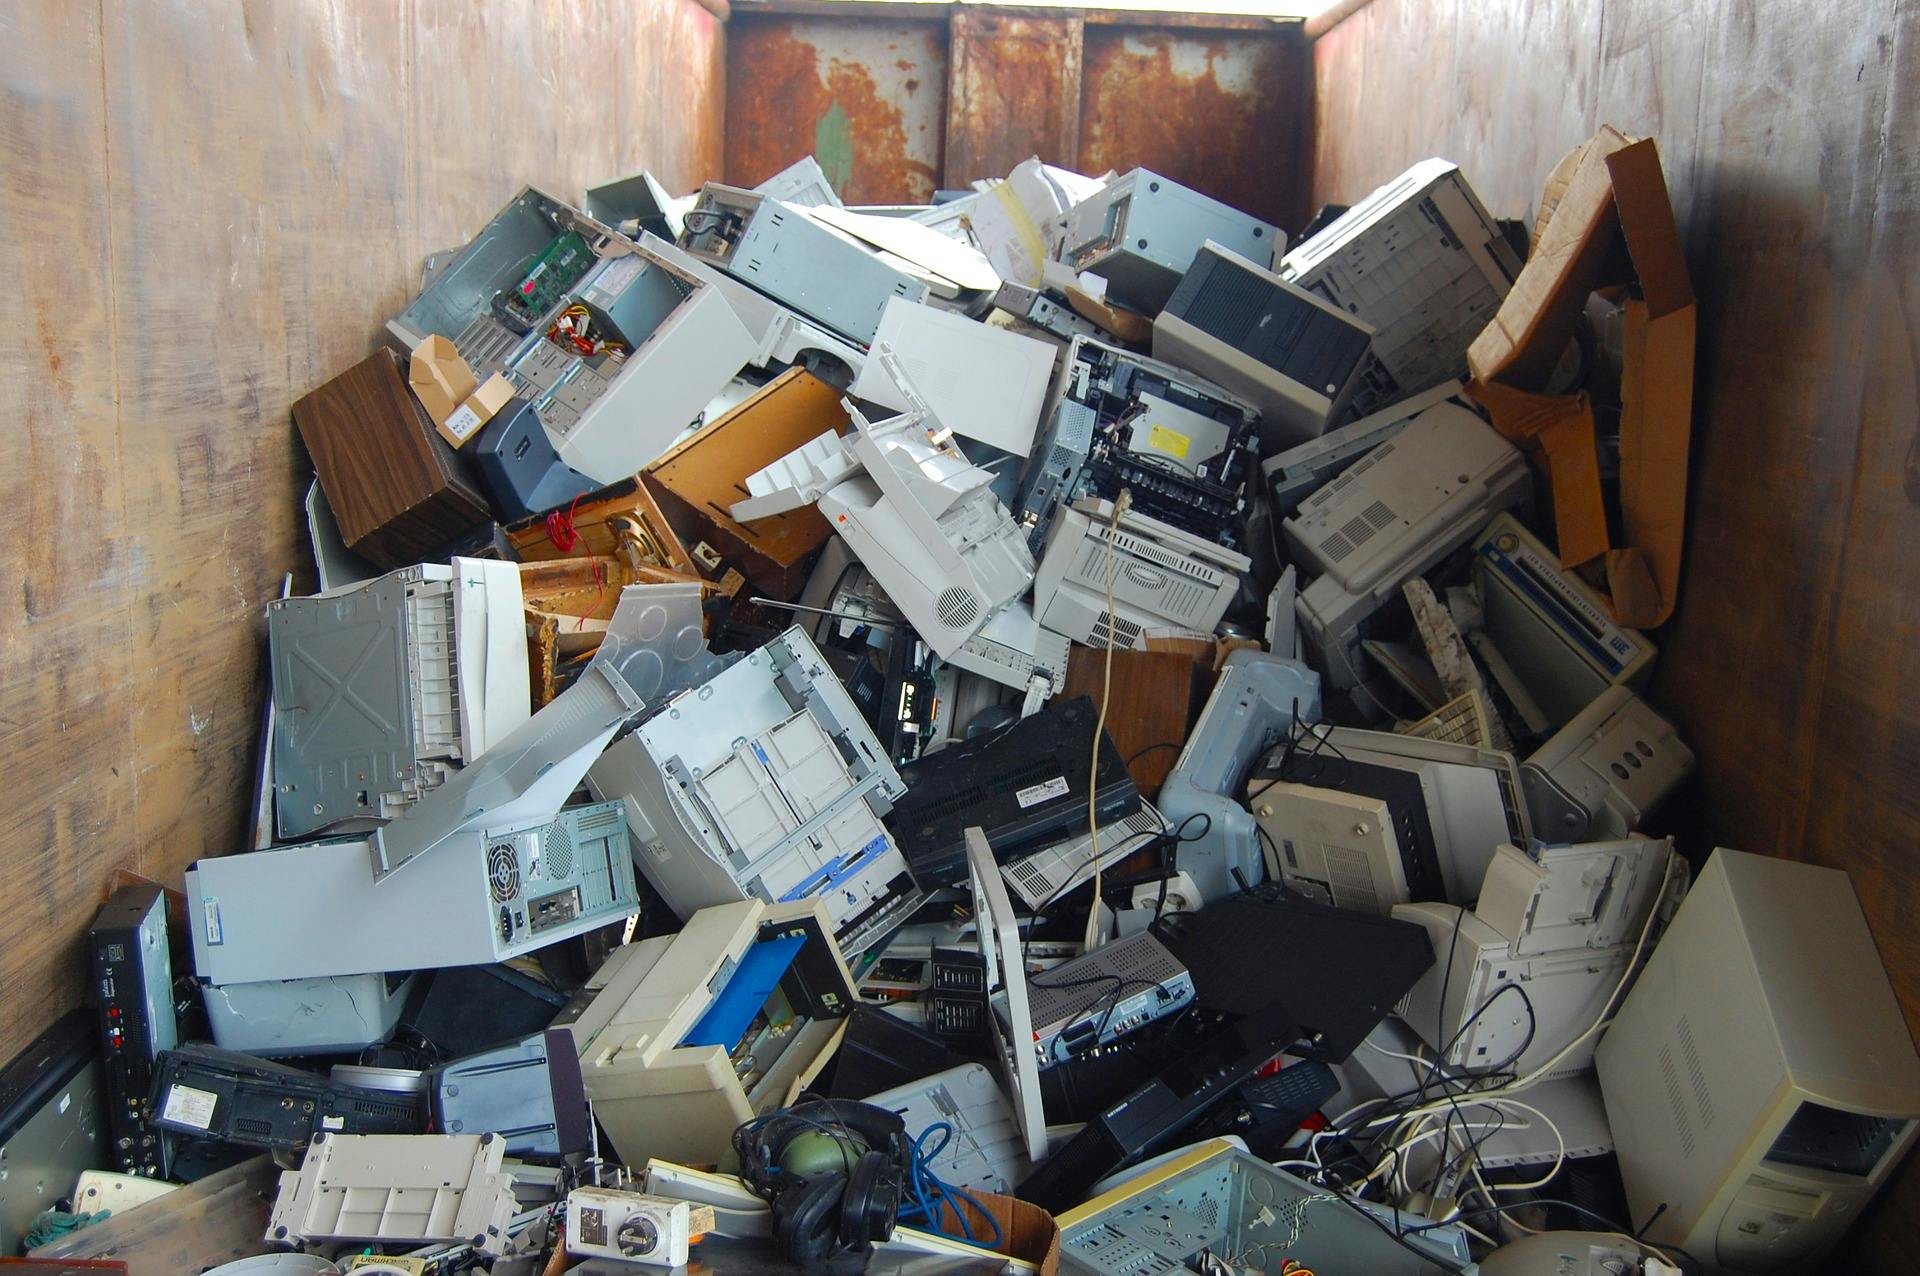 Computer waste